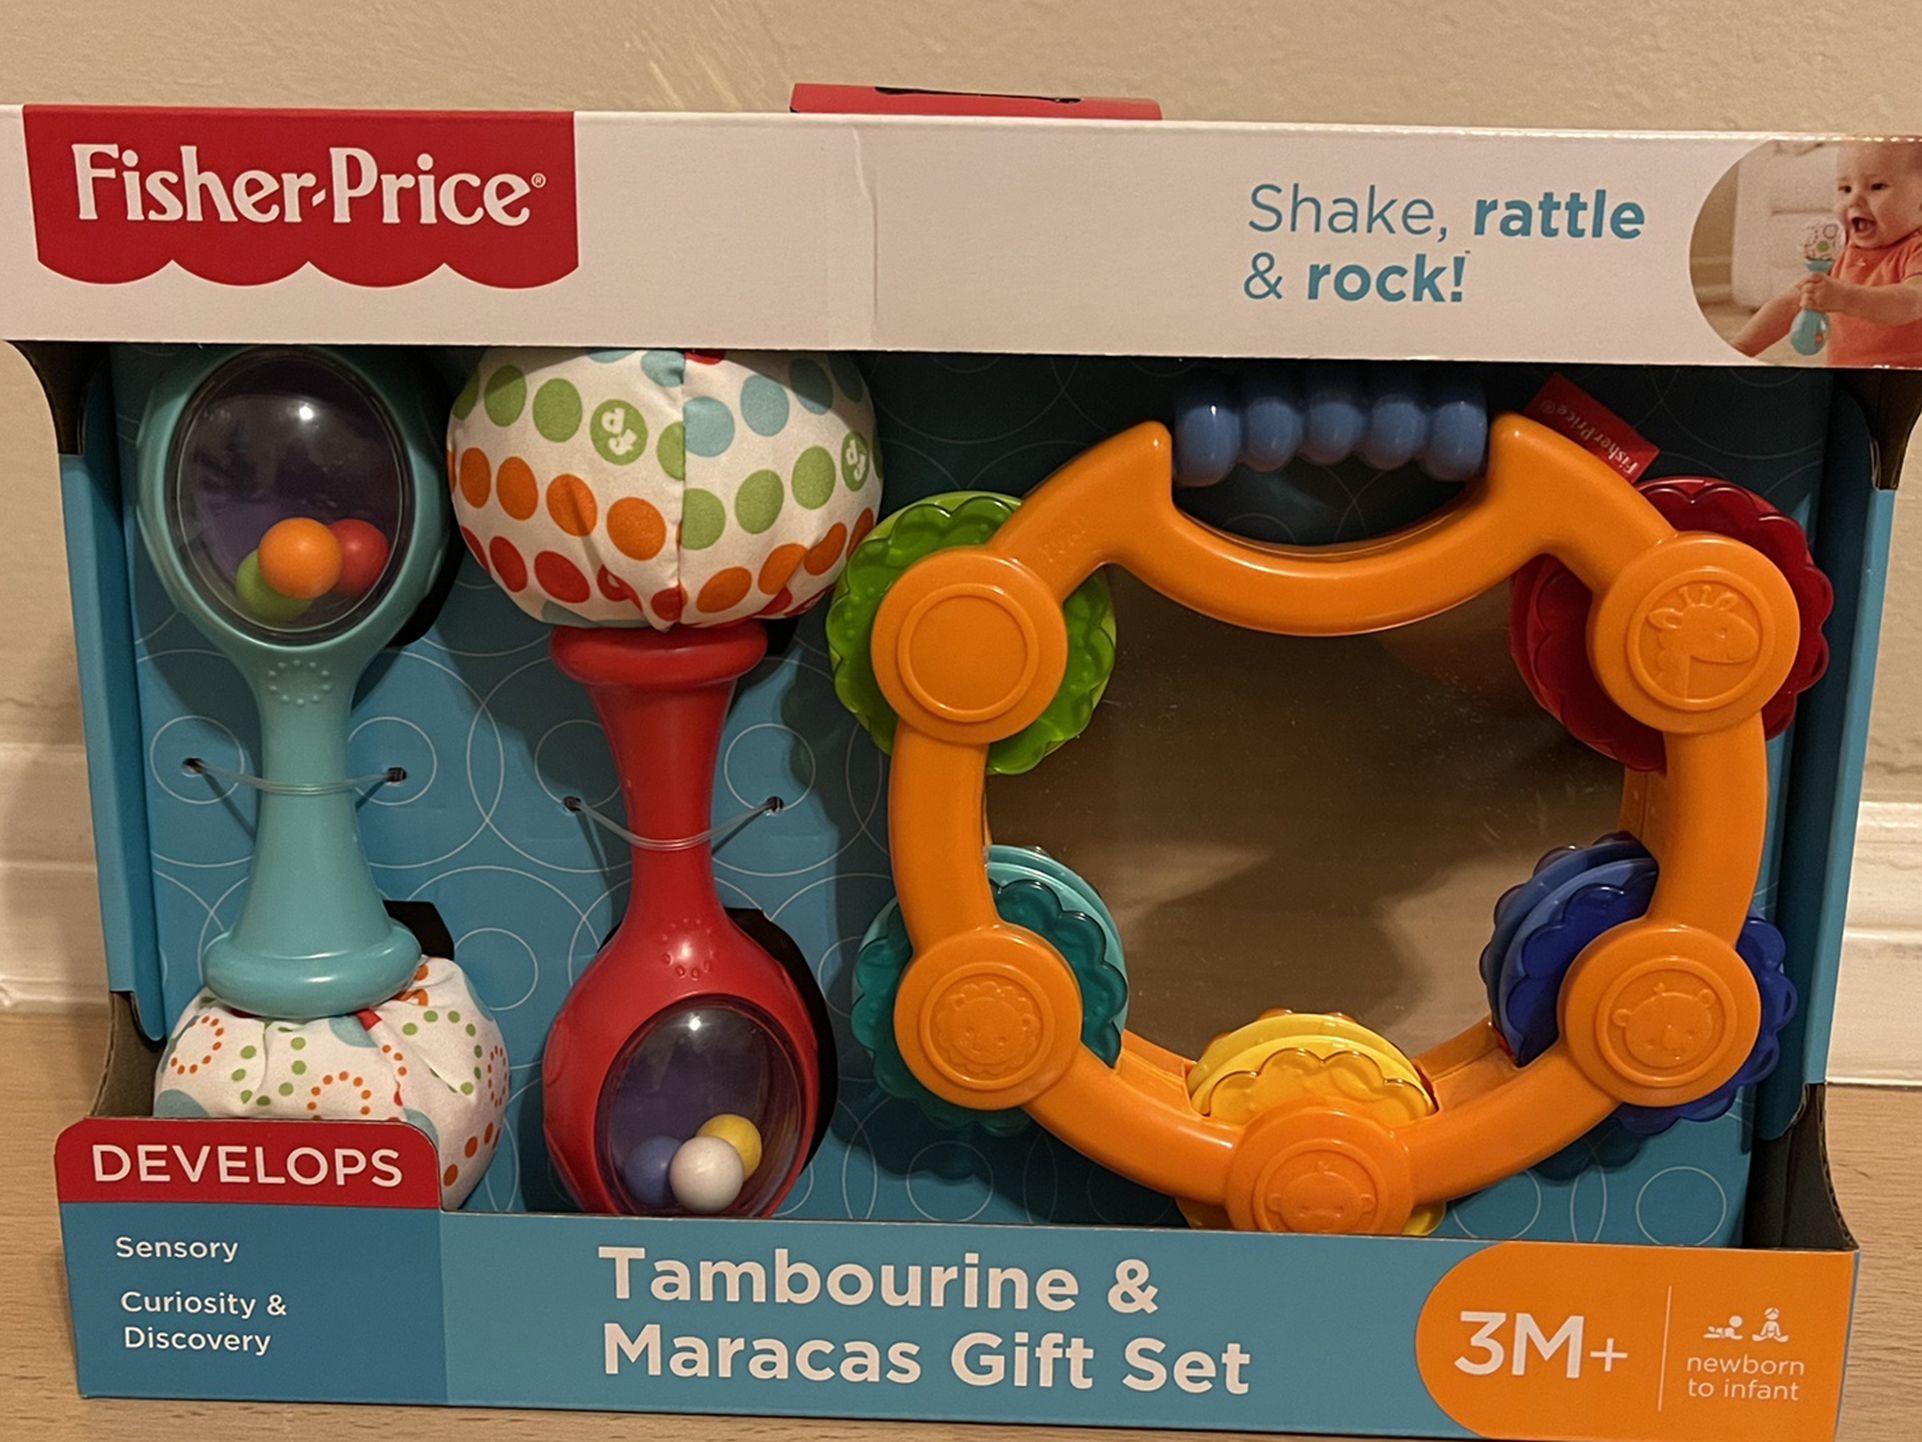 Fisher-Price Tambourine & Maracas Gift Set